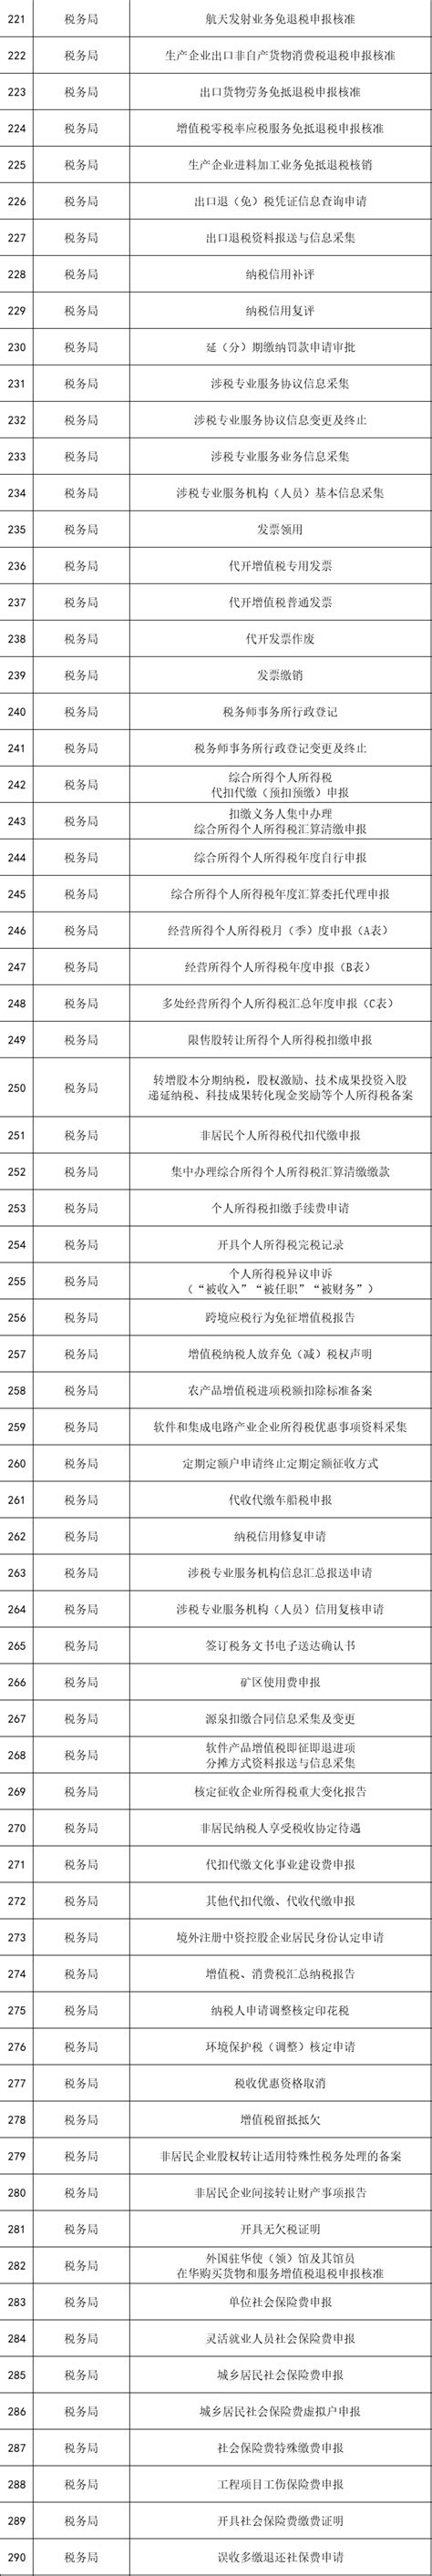 西咸新区与咸阳290项政务服务高频事项可实现跨区通办-陕西省西咸新区开发建设管理委员会